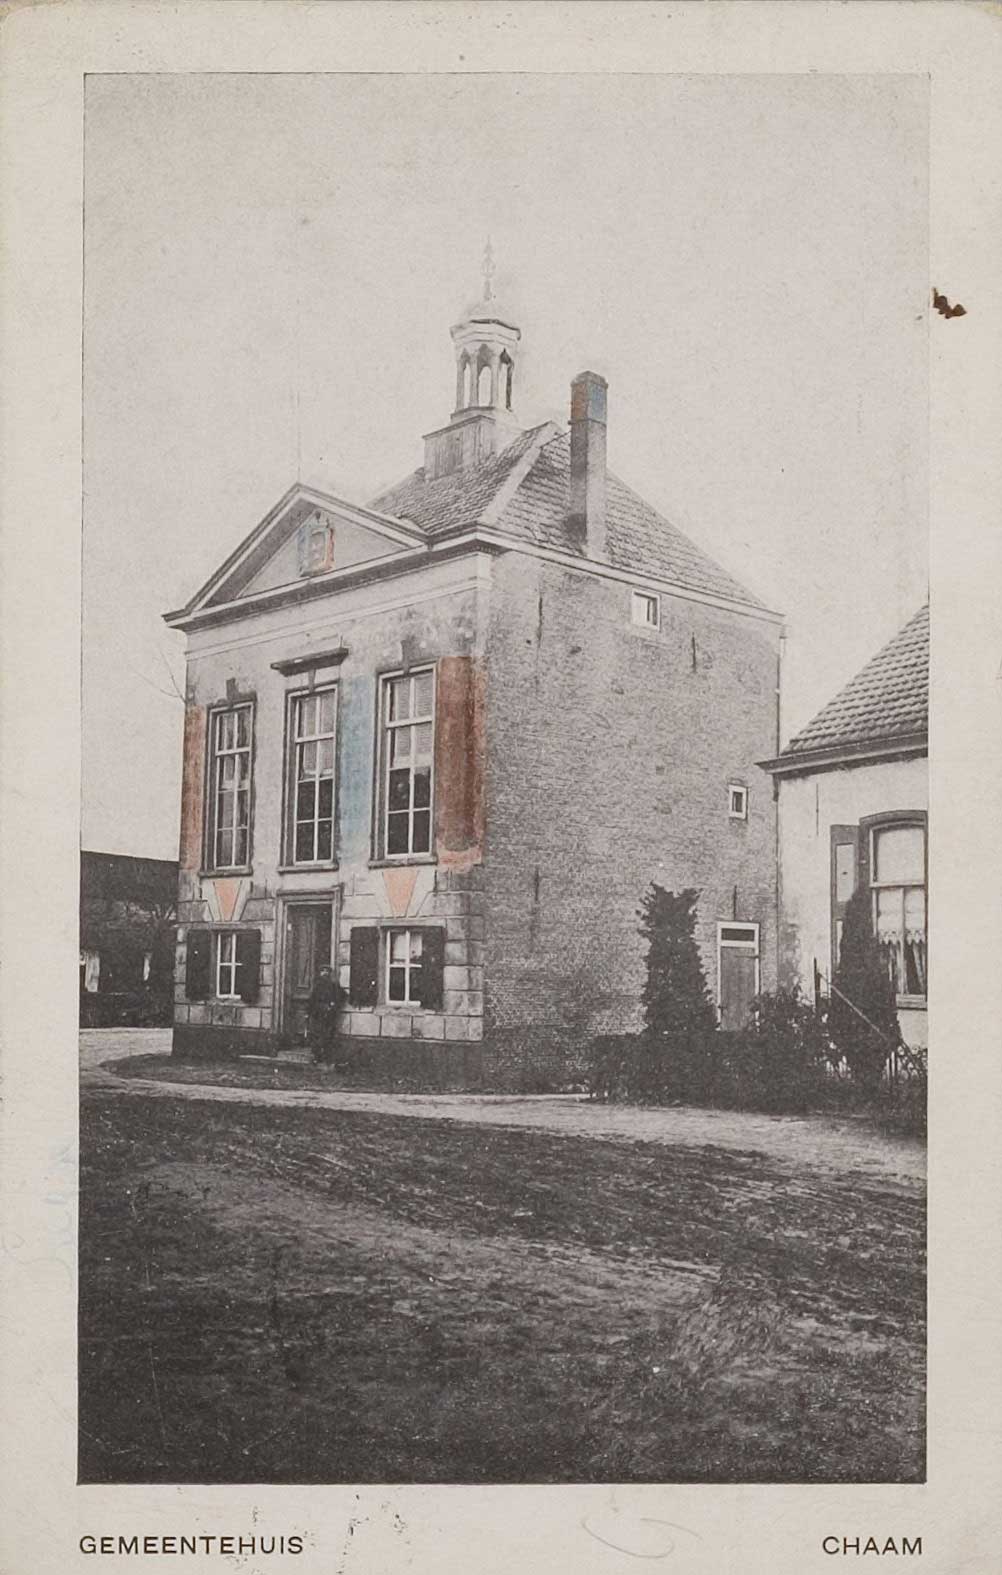 Gemeentehuis Chaam, 1917 (bron: RAT)